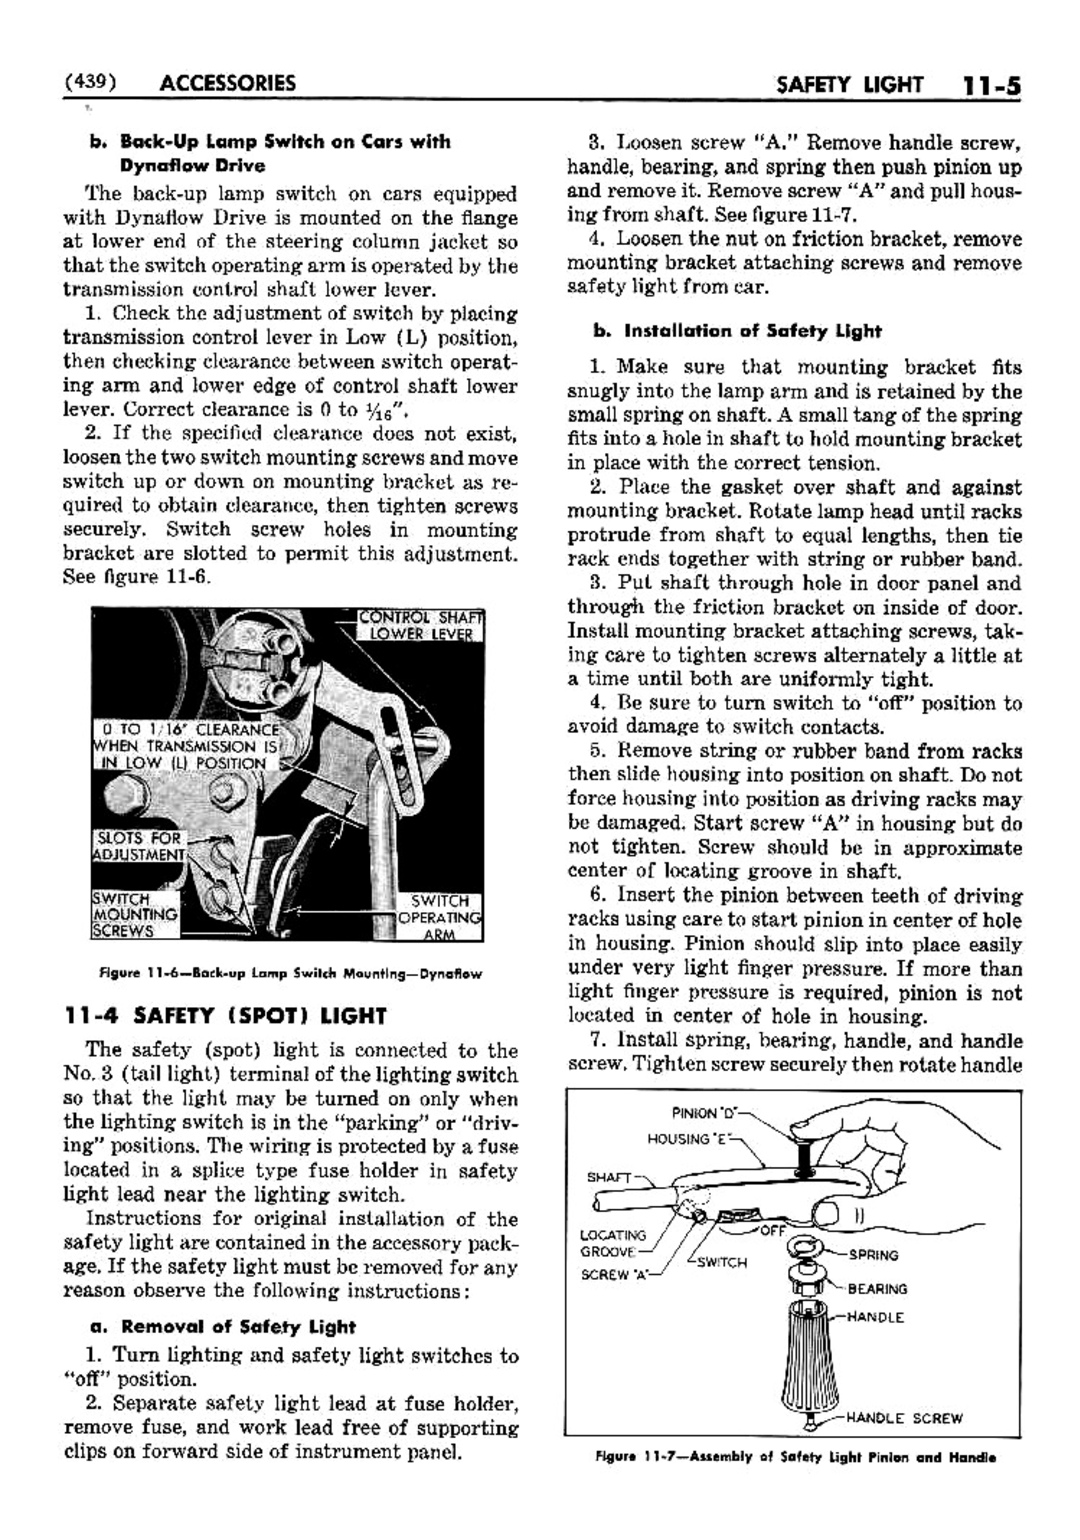 n_12 1952 Buick Shop Manual - Accessories-005-005.jpg